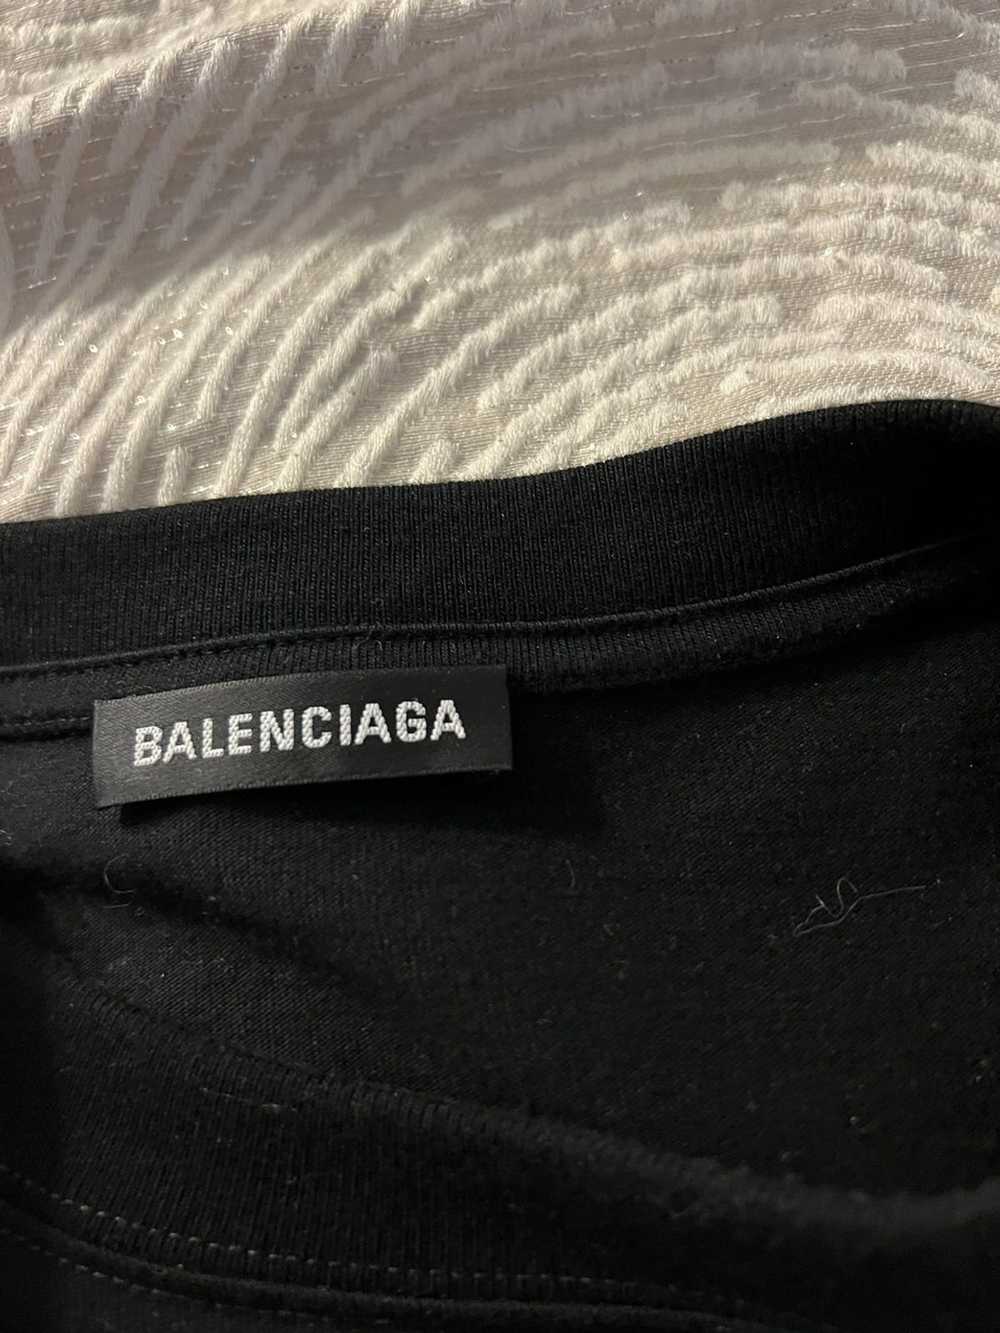 Balenciaga Balenciaga Oversized Long Sleeve T-shi… - image 4